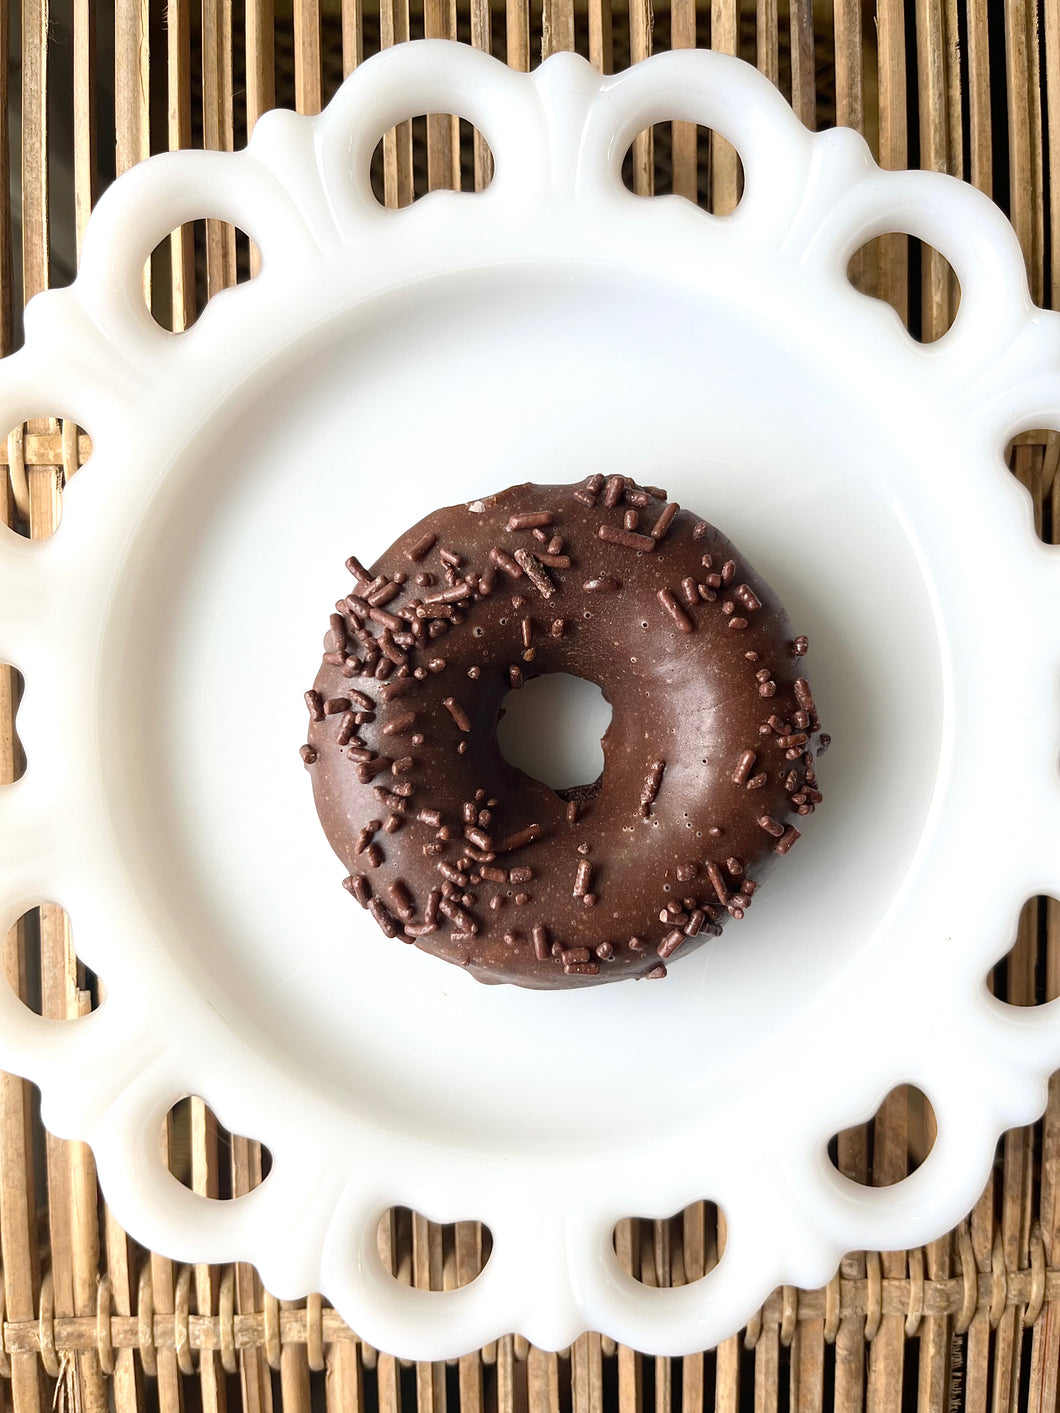 Chocolate Sprinkle Donut with Chocolate Glaze, Single